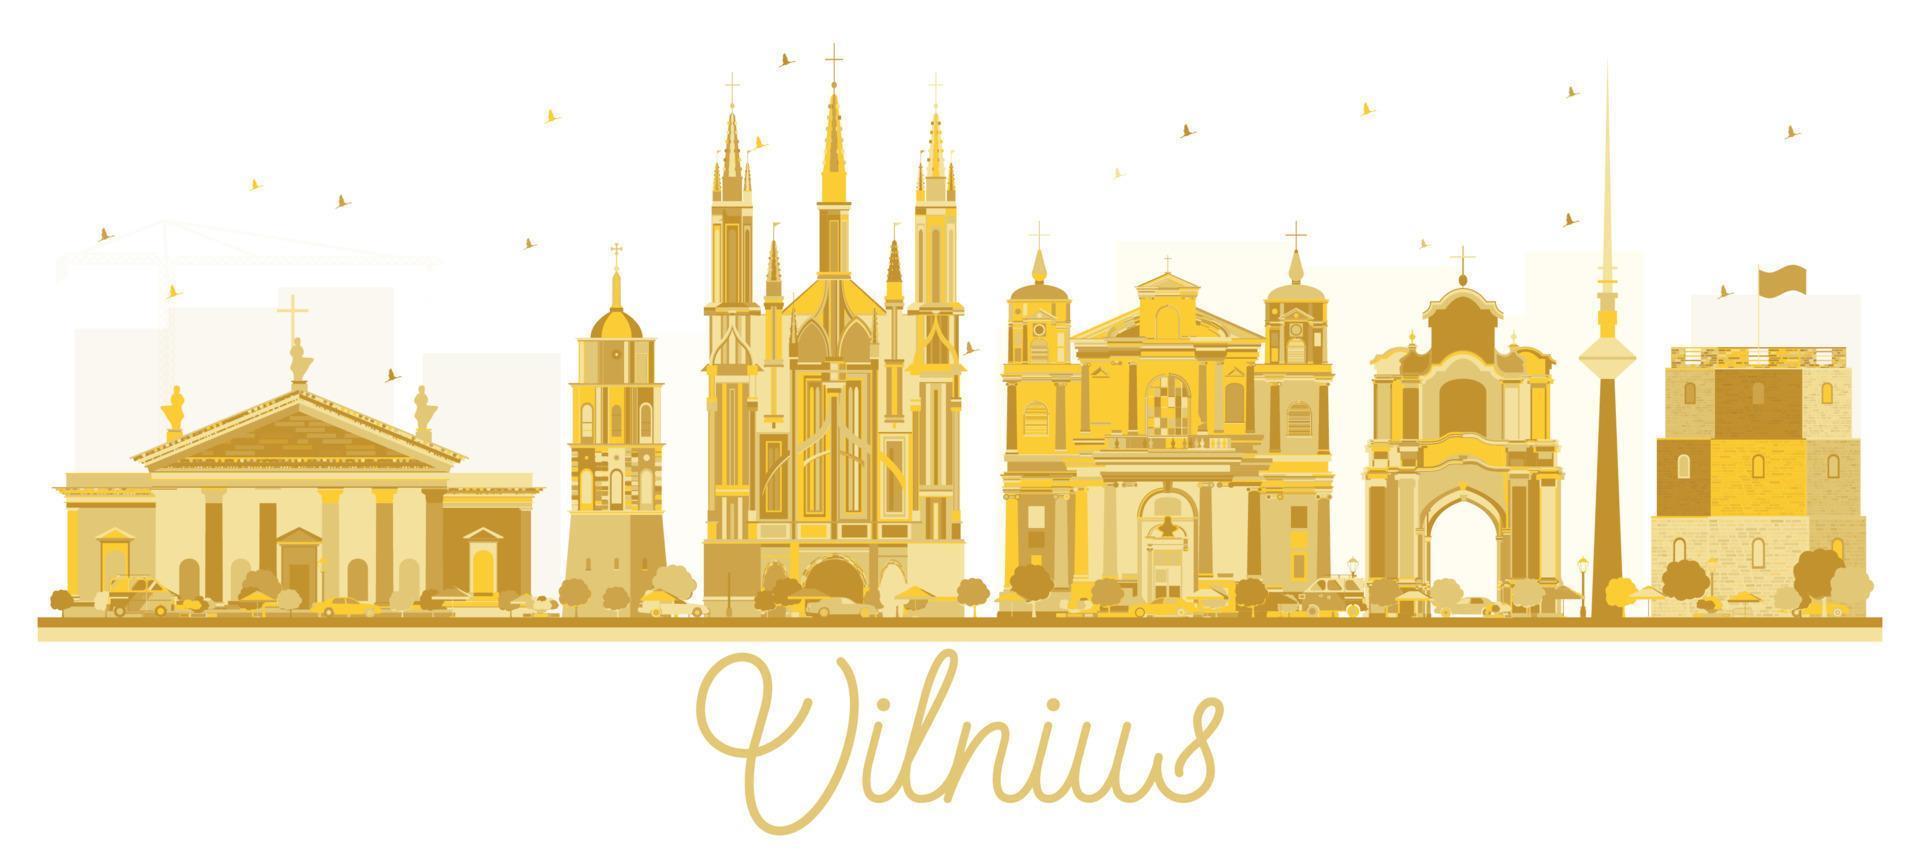 vilnius lituanie silhouette dorée sur les toits de la ville. vecteur